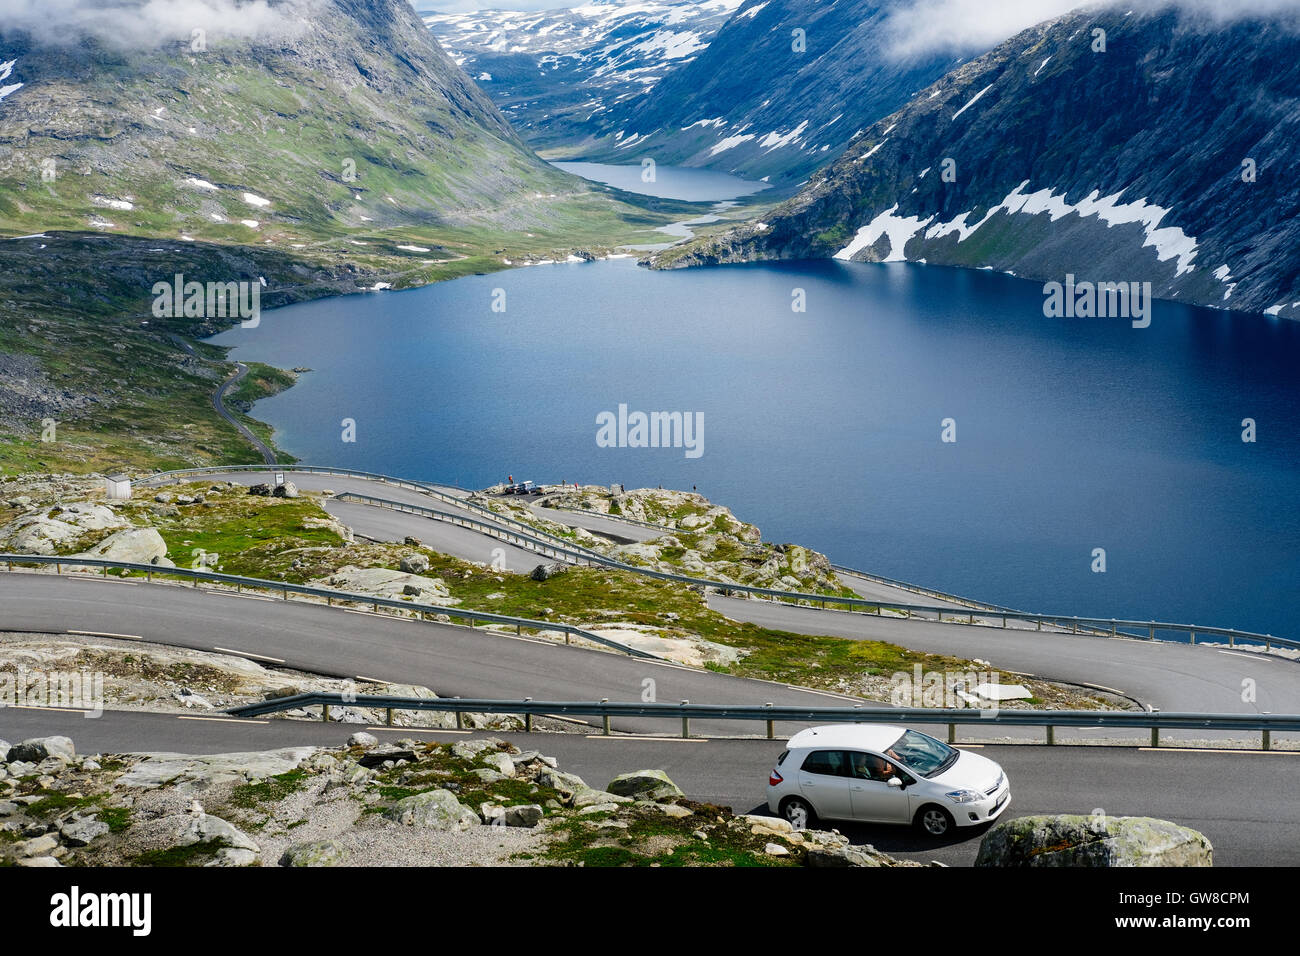 Le lac vu du Djupvatnet une route de montagne à la montagne Dalsnibba, fjord de Geiranger, Norvège Banque D'Images